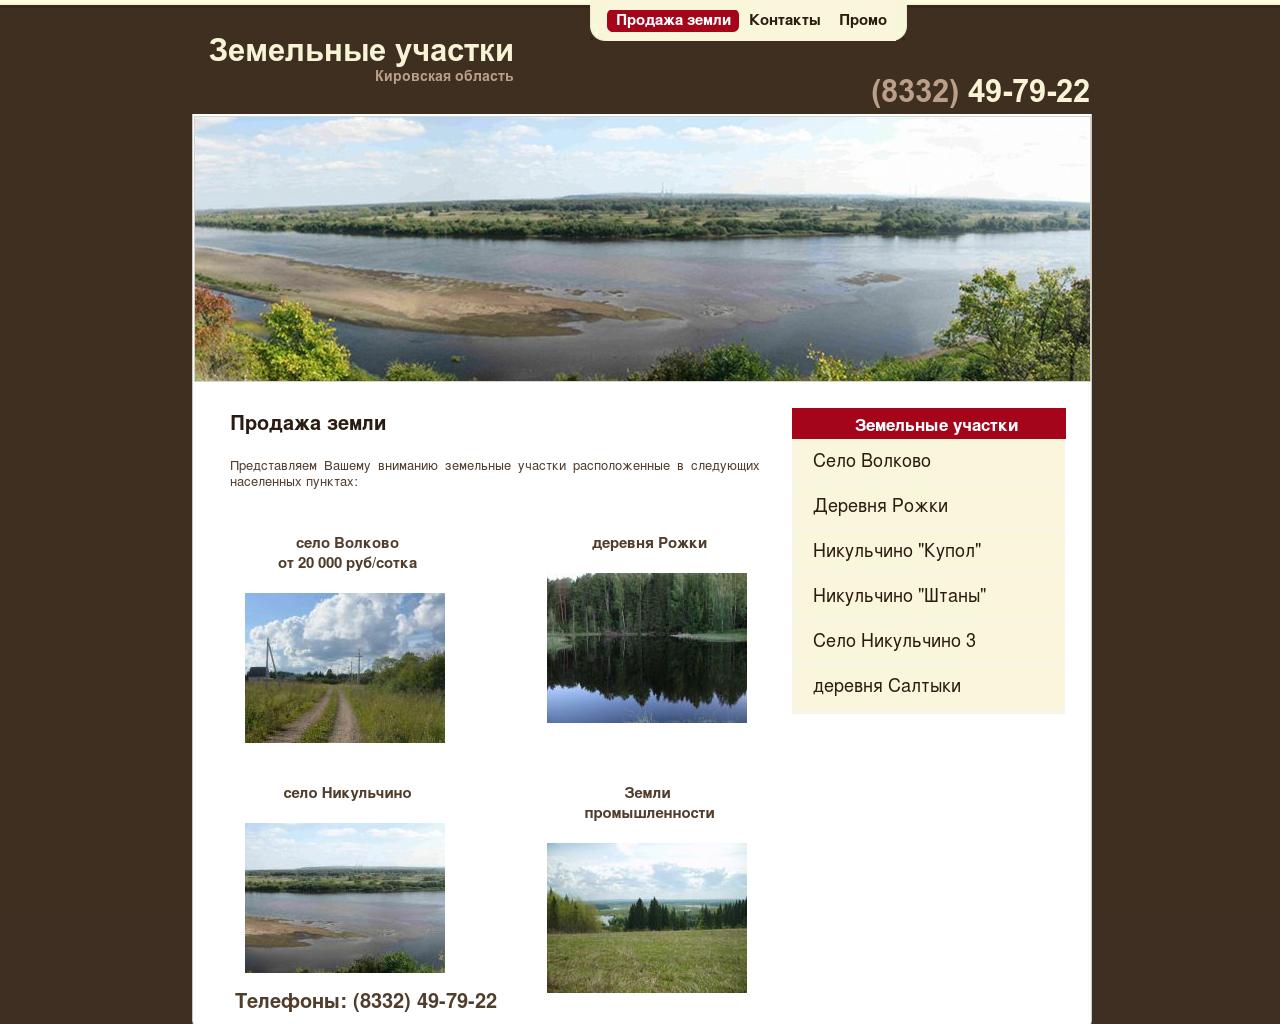 Изображение сайта zm43.ru в разрешении 1280x1024